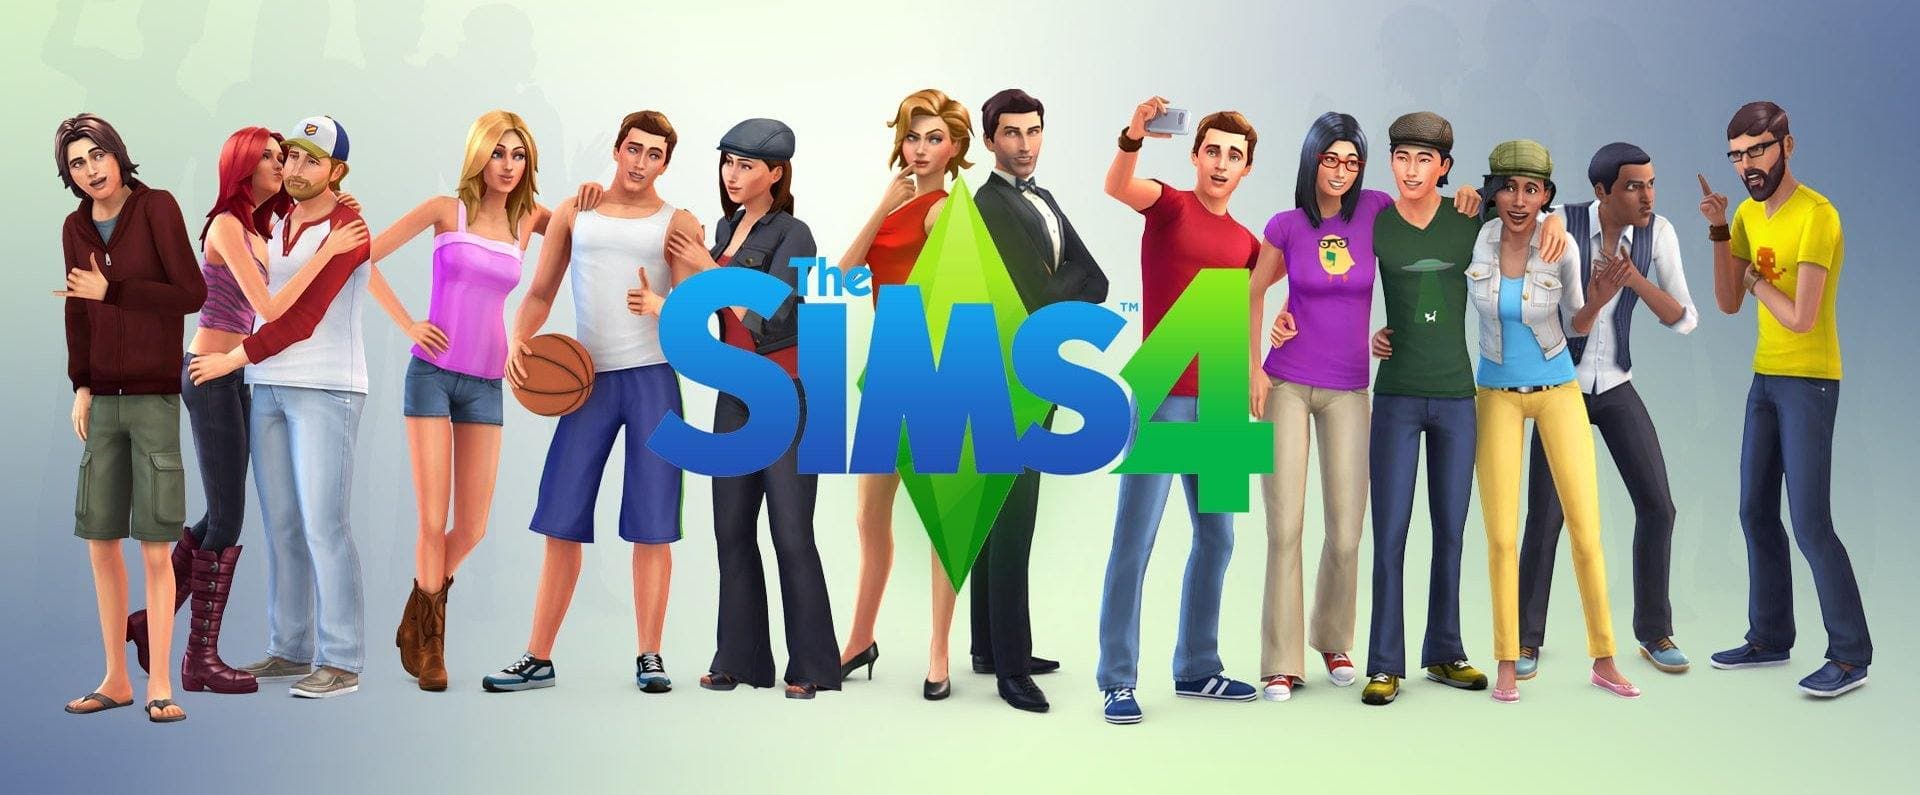 סימס 4 באנדל נקי ונוח - משחק + 2 הרחבות | The Sims 4 Clean & Cozy Bundle